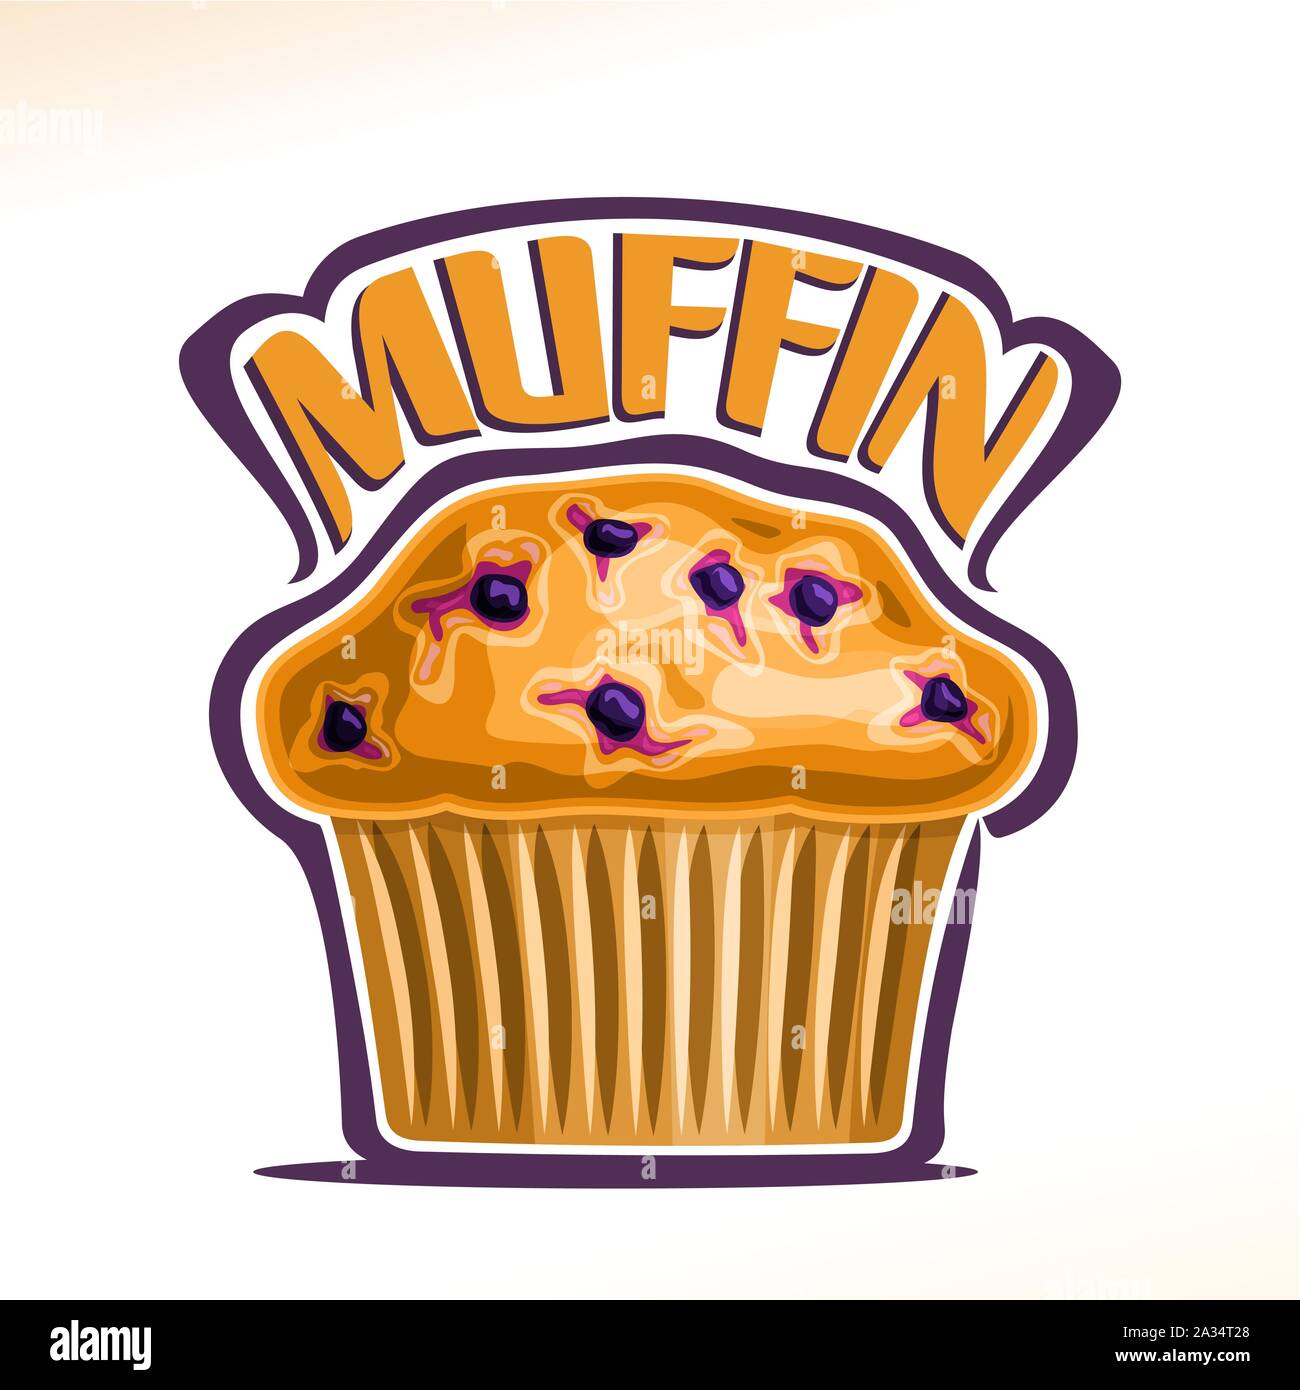 Vektor logo für Blueberry Muffin, ursprüngliche Schriftart für gelbe Wort Muffin, Poster mit frischen Backwaren für Frühstück, Illustration von kleinen Veg Stock Vektor